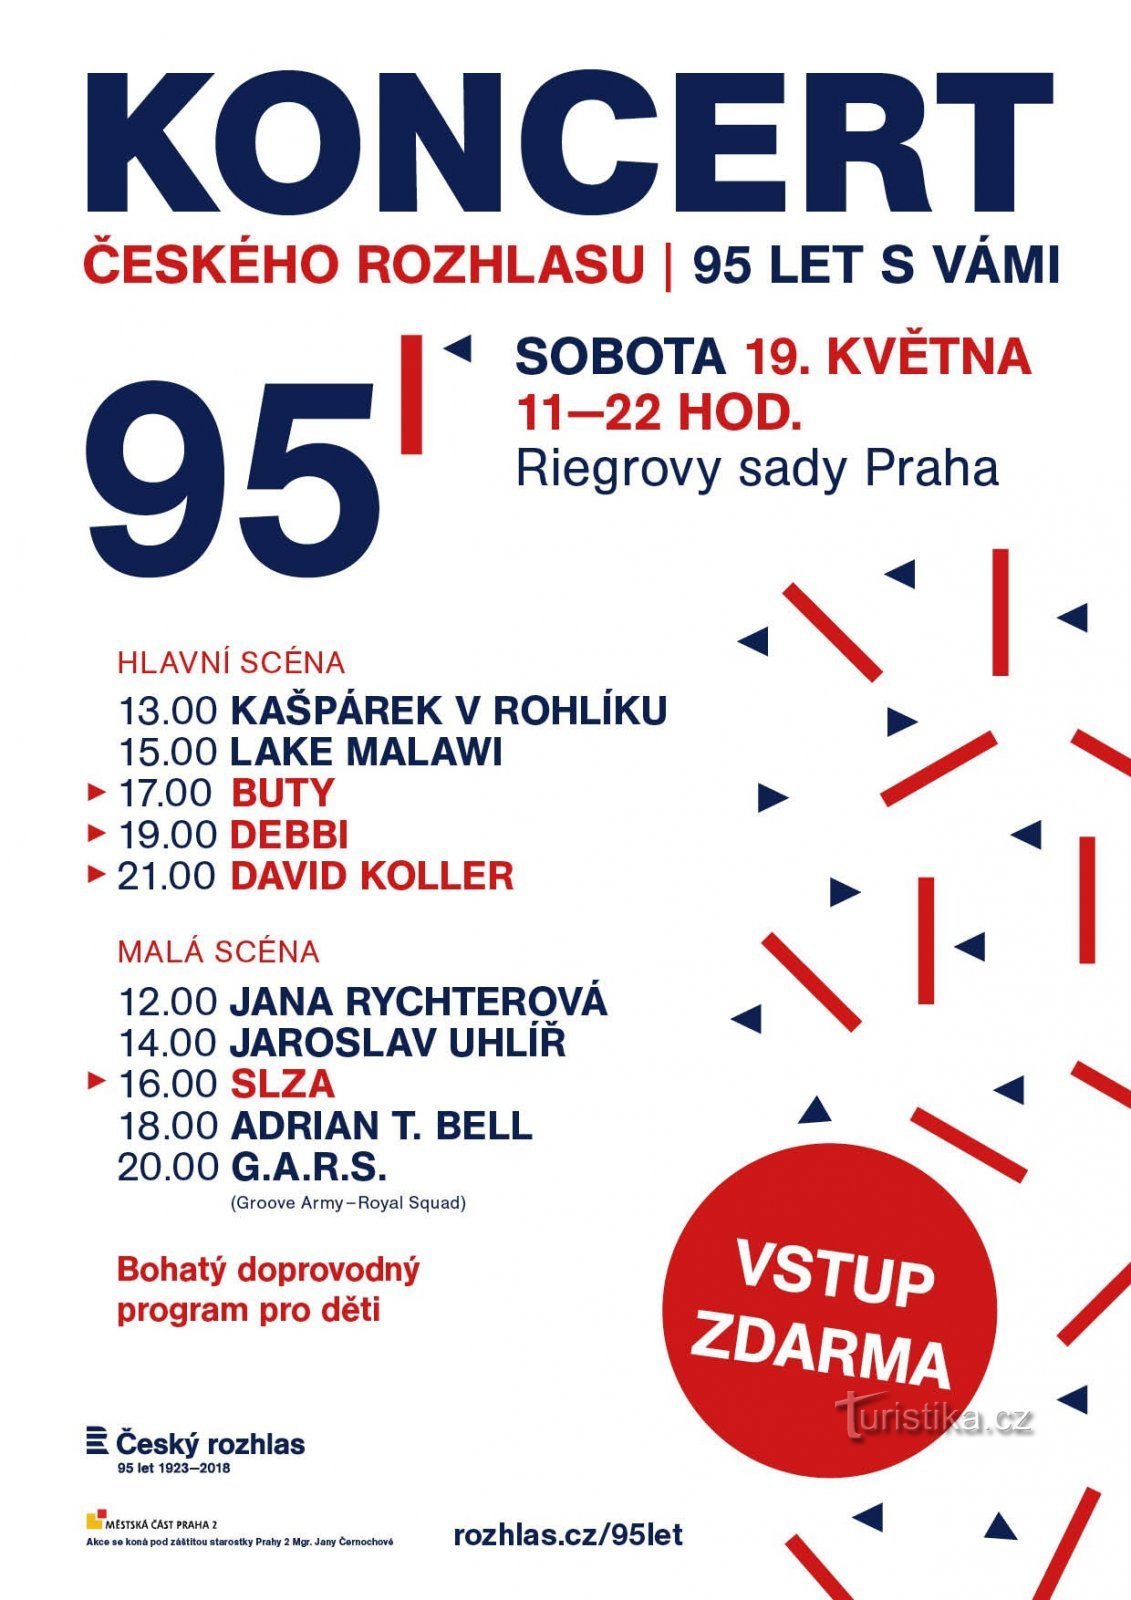 Den tjekkiske radio fylder 95 år, fejringen kulminerer med en koncert i Riegrový sady